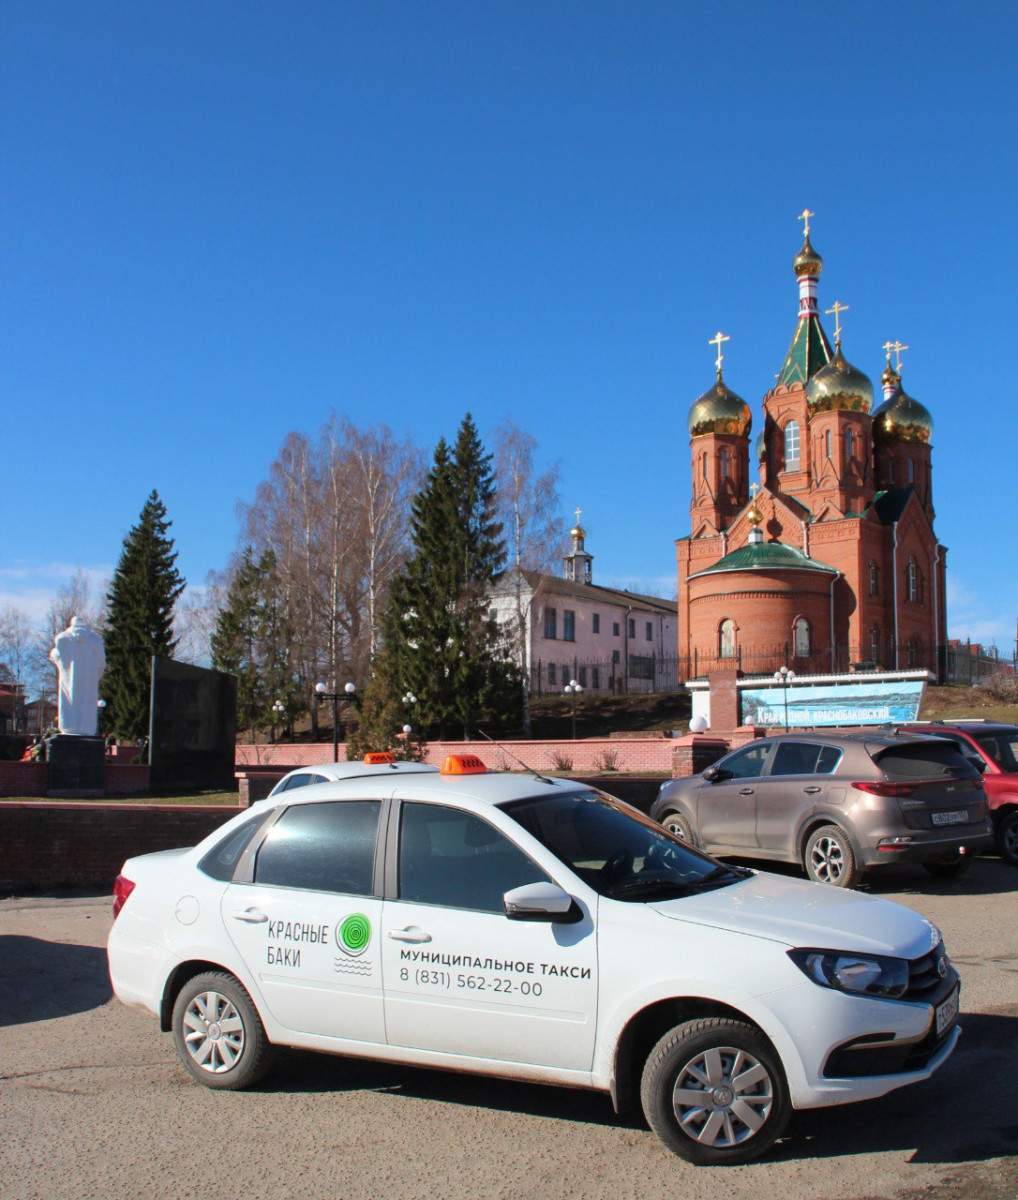 Муниципальное такси появилось в Краснобаковском округе